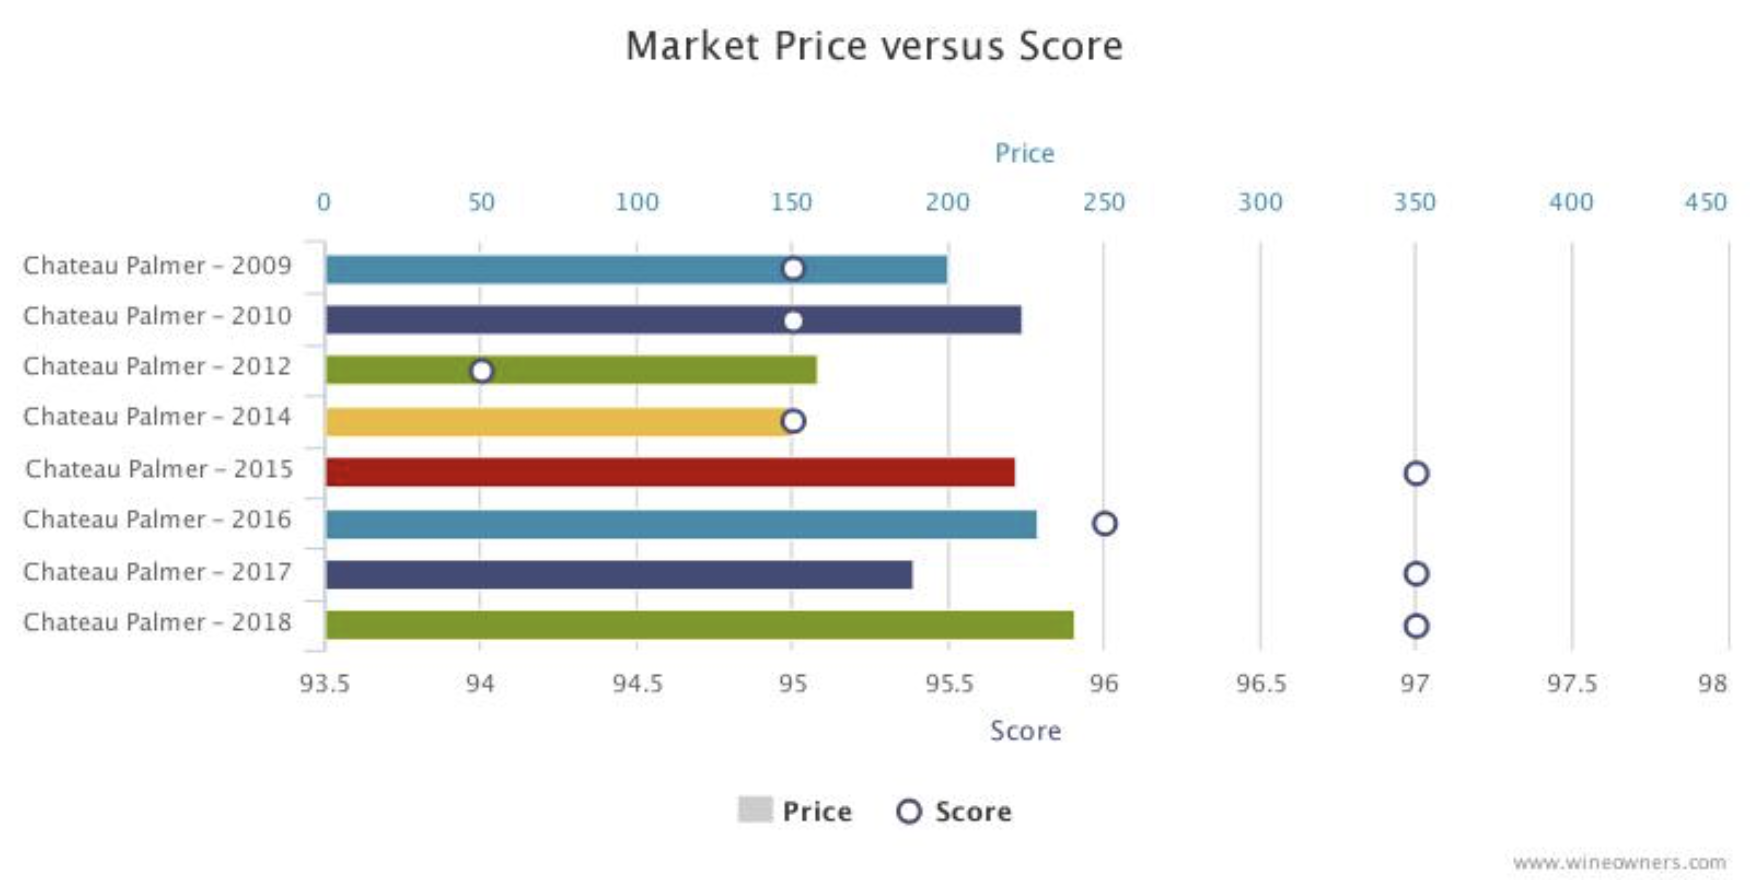 Chateau Palmer Bordeaux 2018 en primeur - Wine Owners - Market price versus score